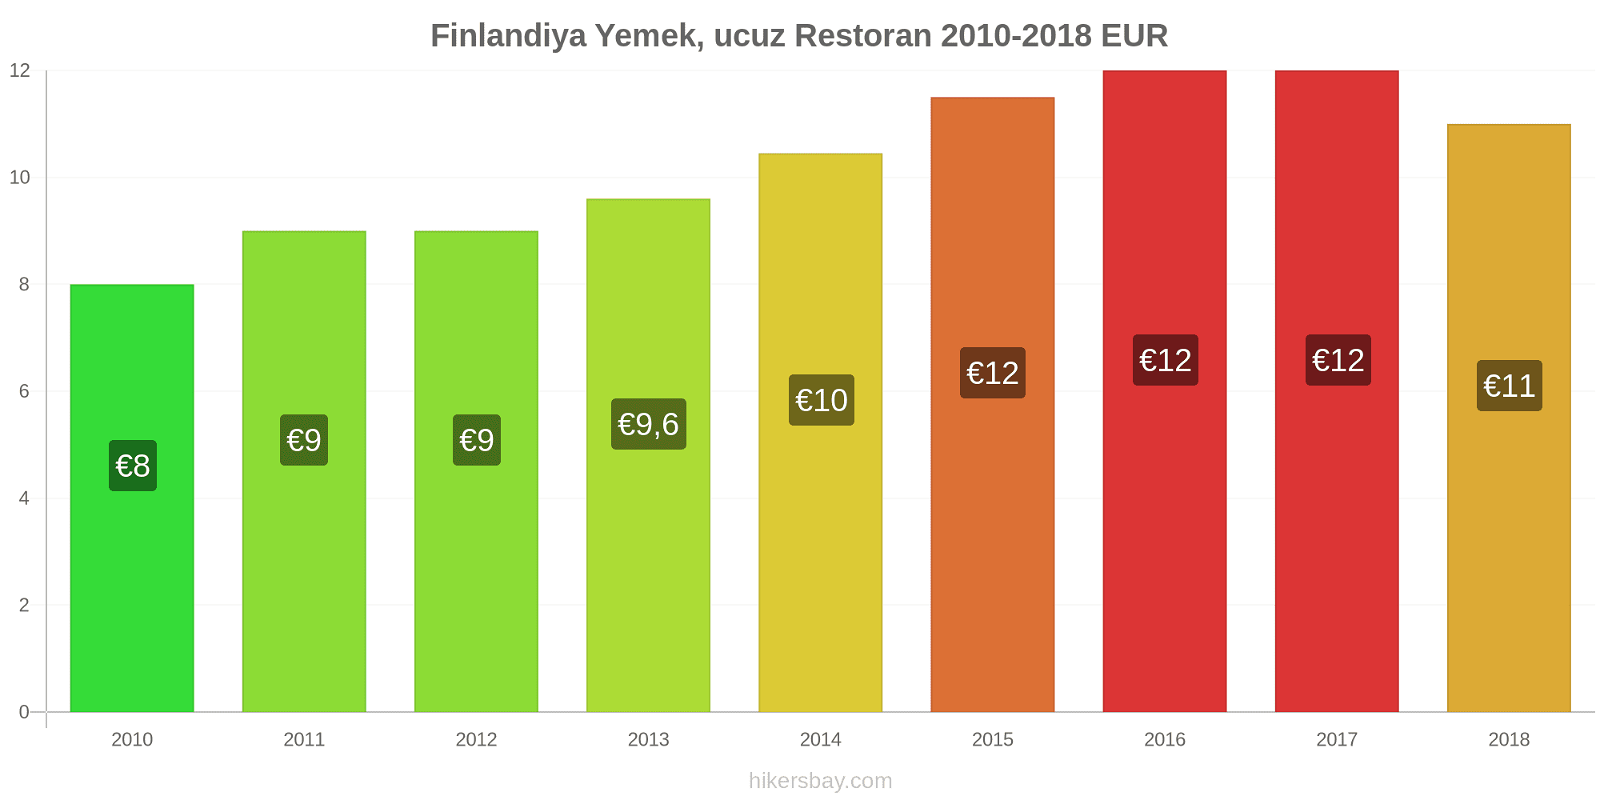 Finlandiya fiyat değişiklikleri Ucuz bir restoranda yemek hikersbay.com